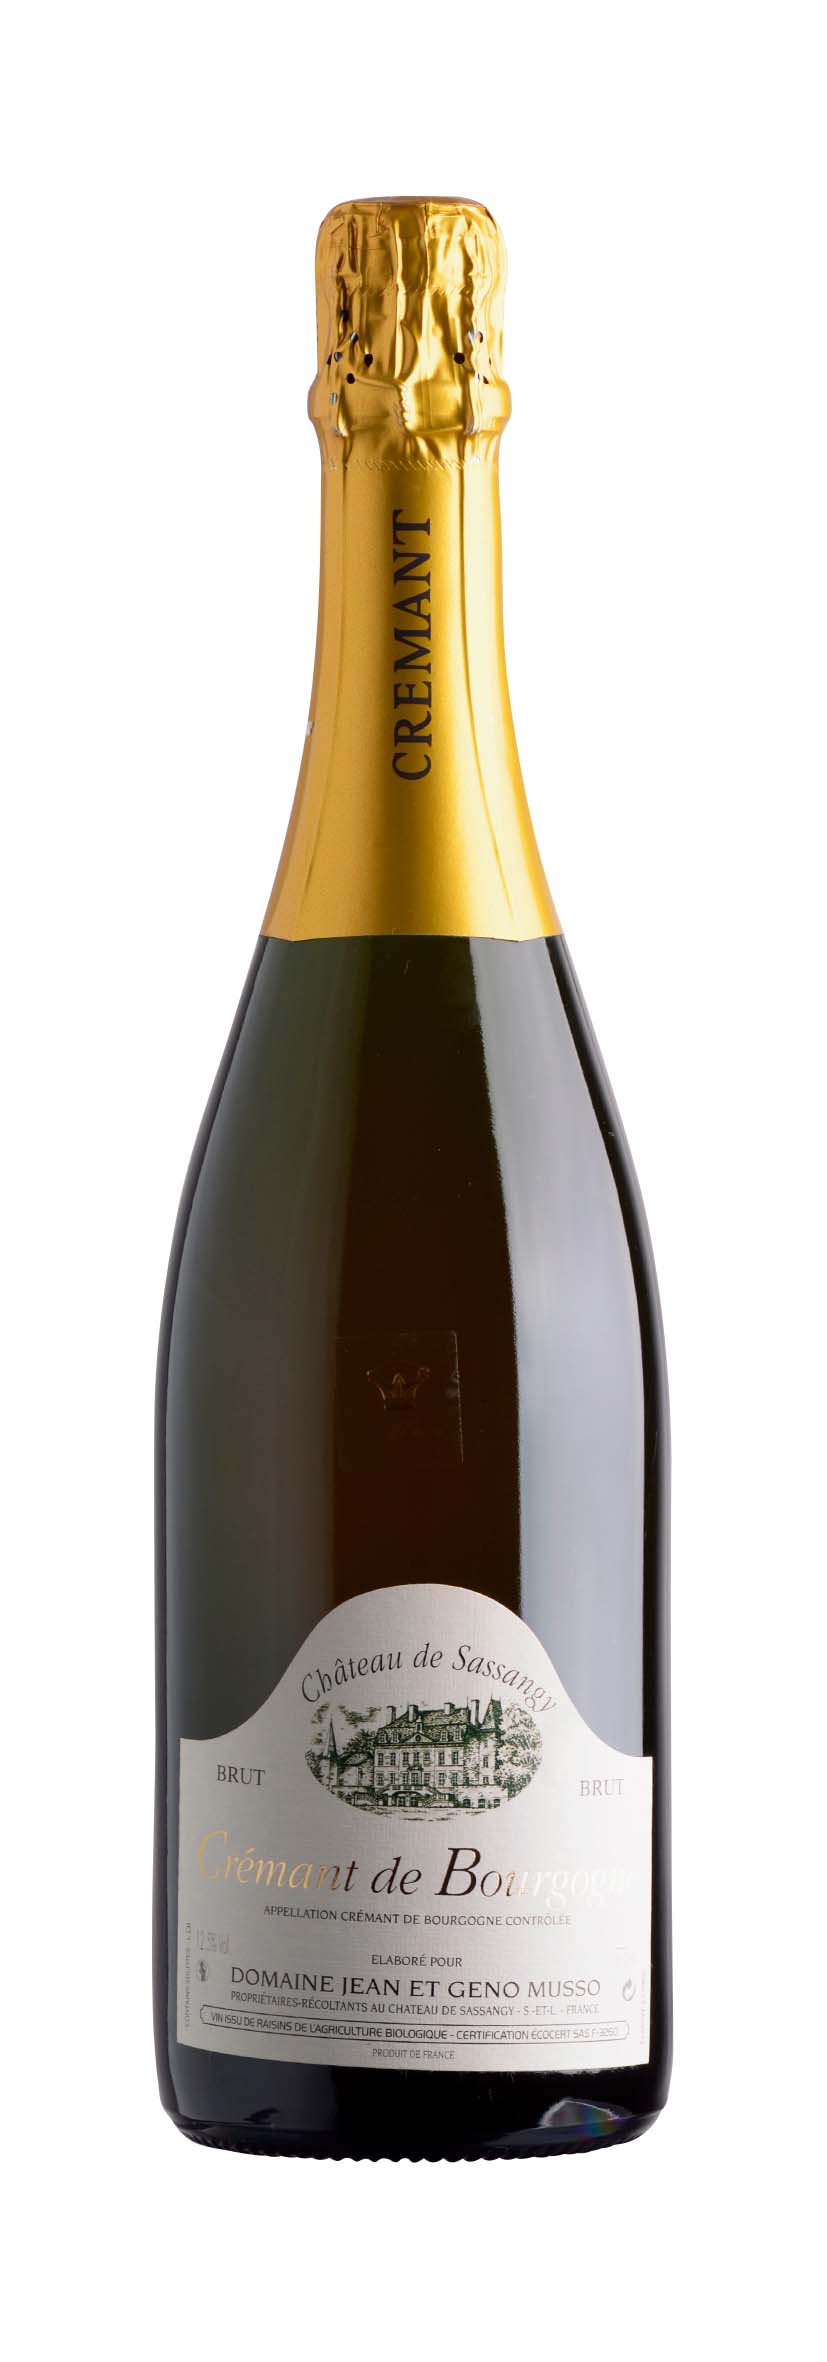 Crémant de Bourgogne AOC Eminent Blanc	 2011